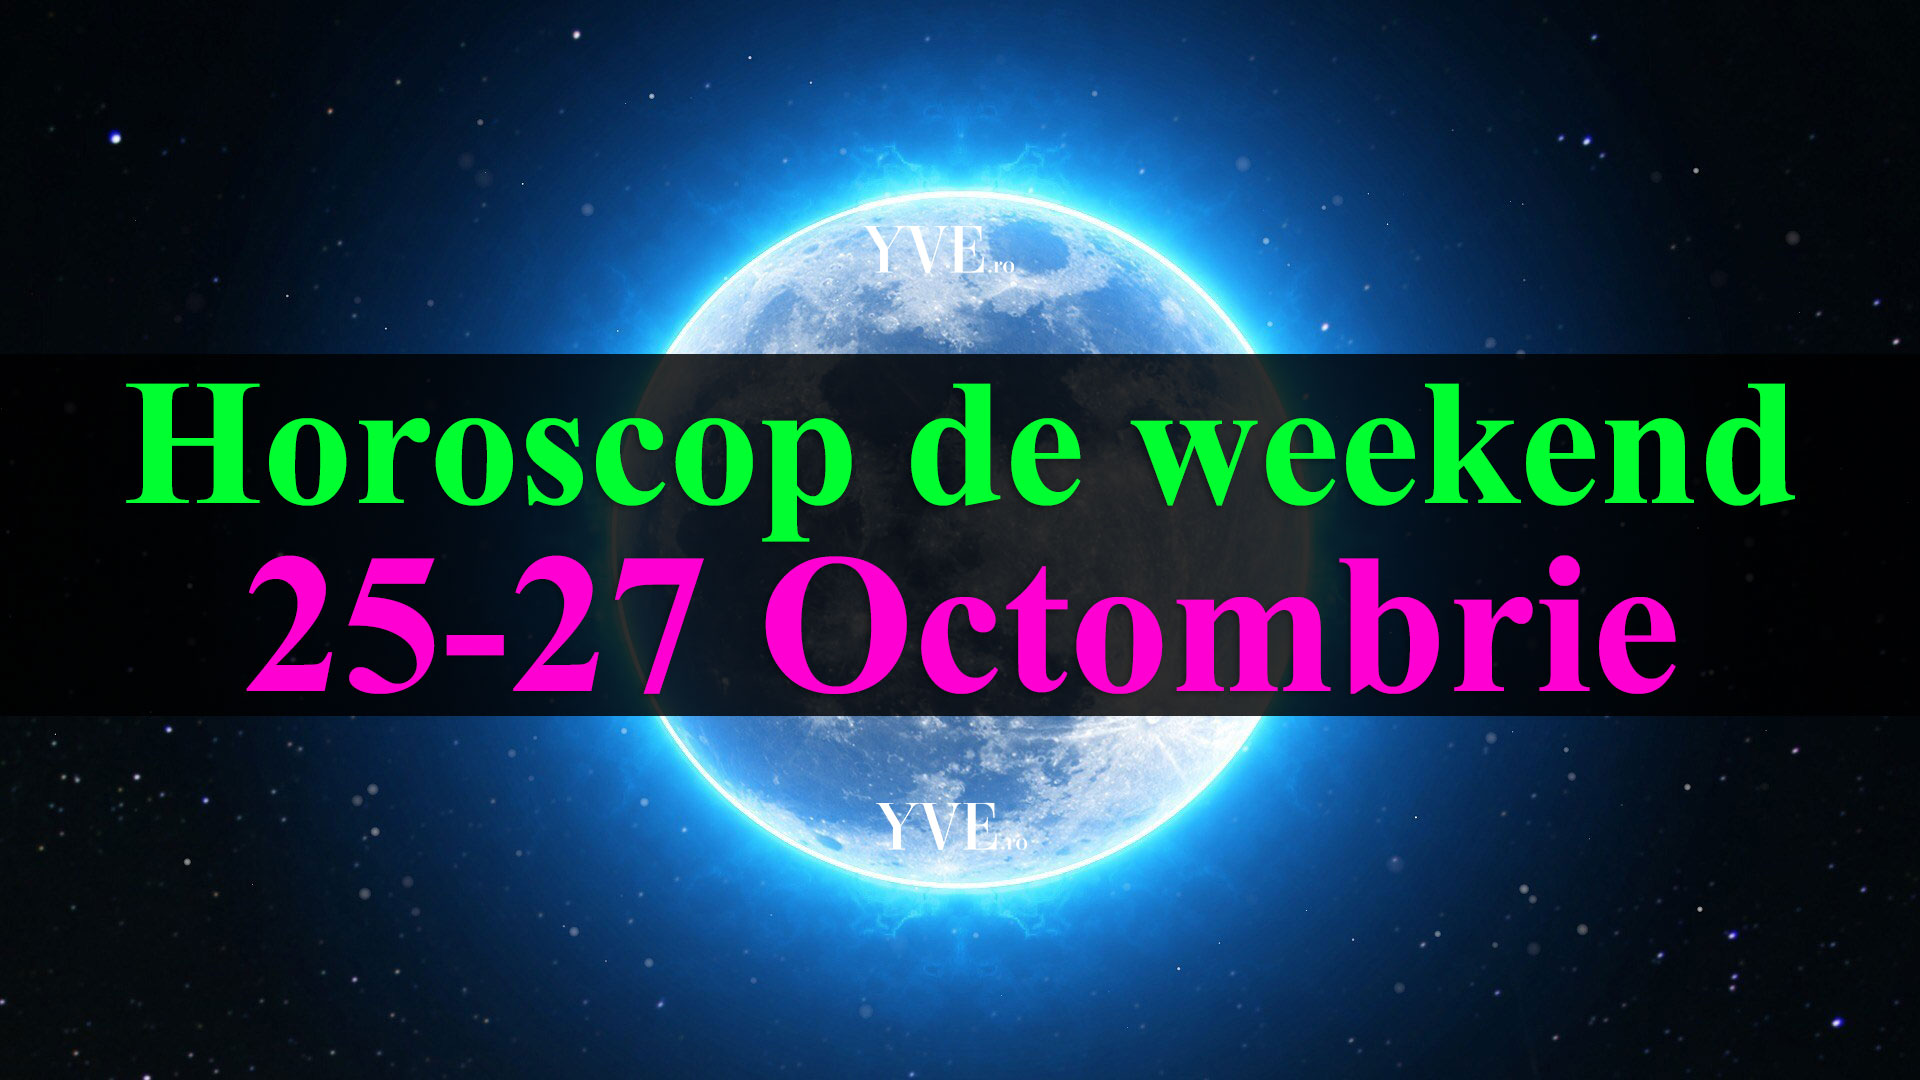 Horoscop de weekend 25-27 Octombrie 2019